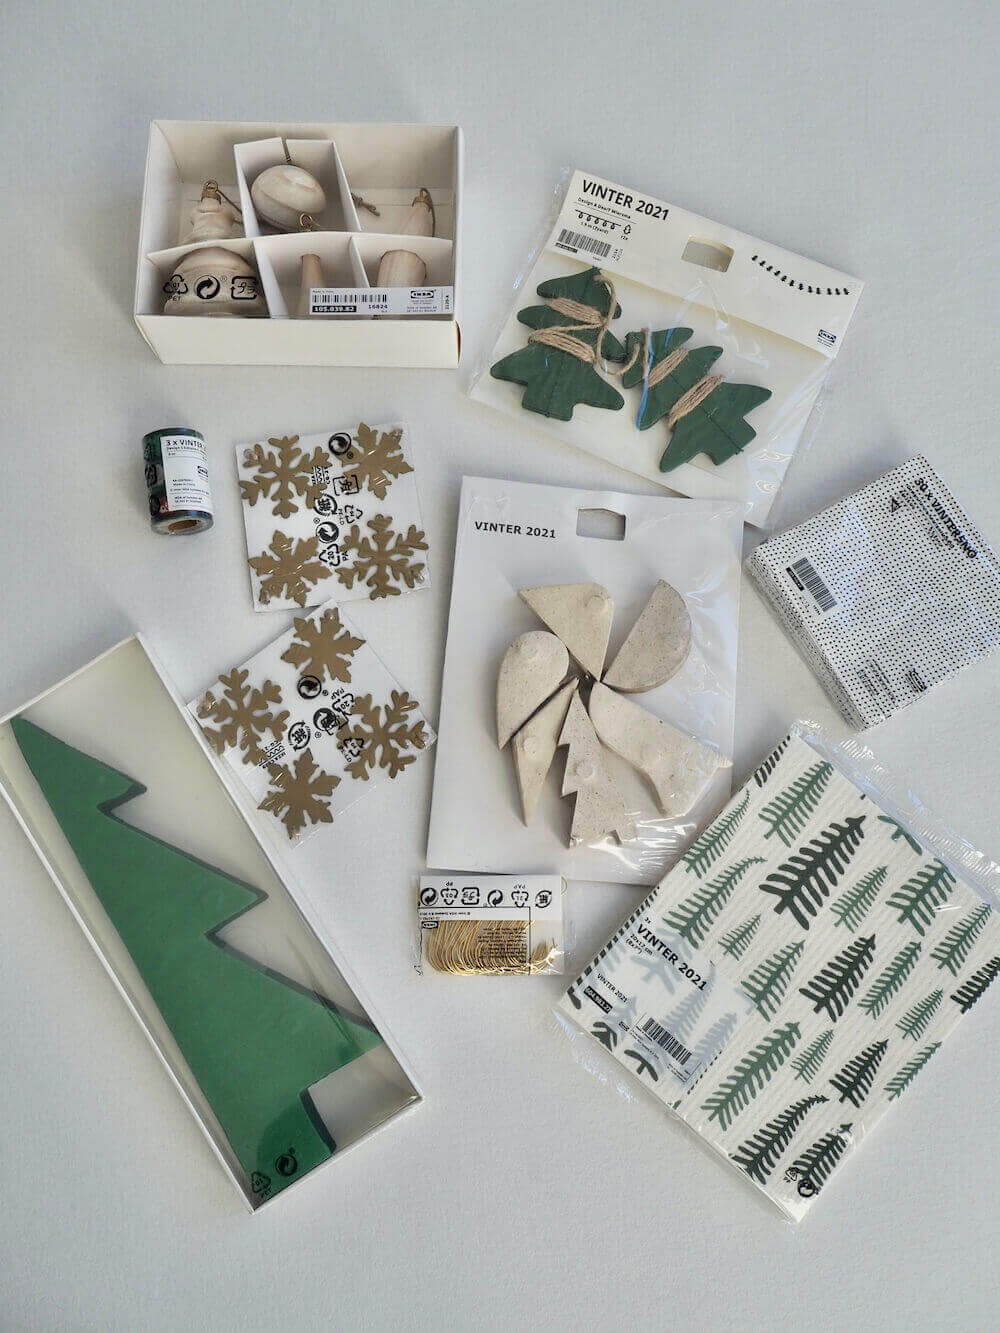 2021 IKEAおすすめツリー5選とクリスマス準備の購入品 — りすと私と暮らし。